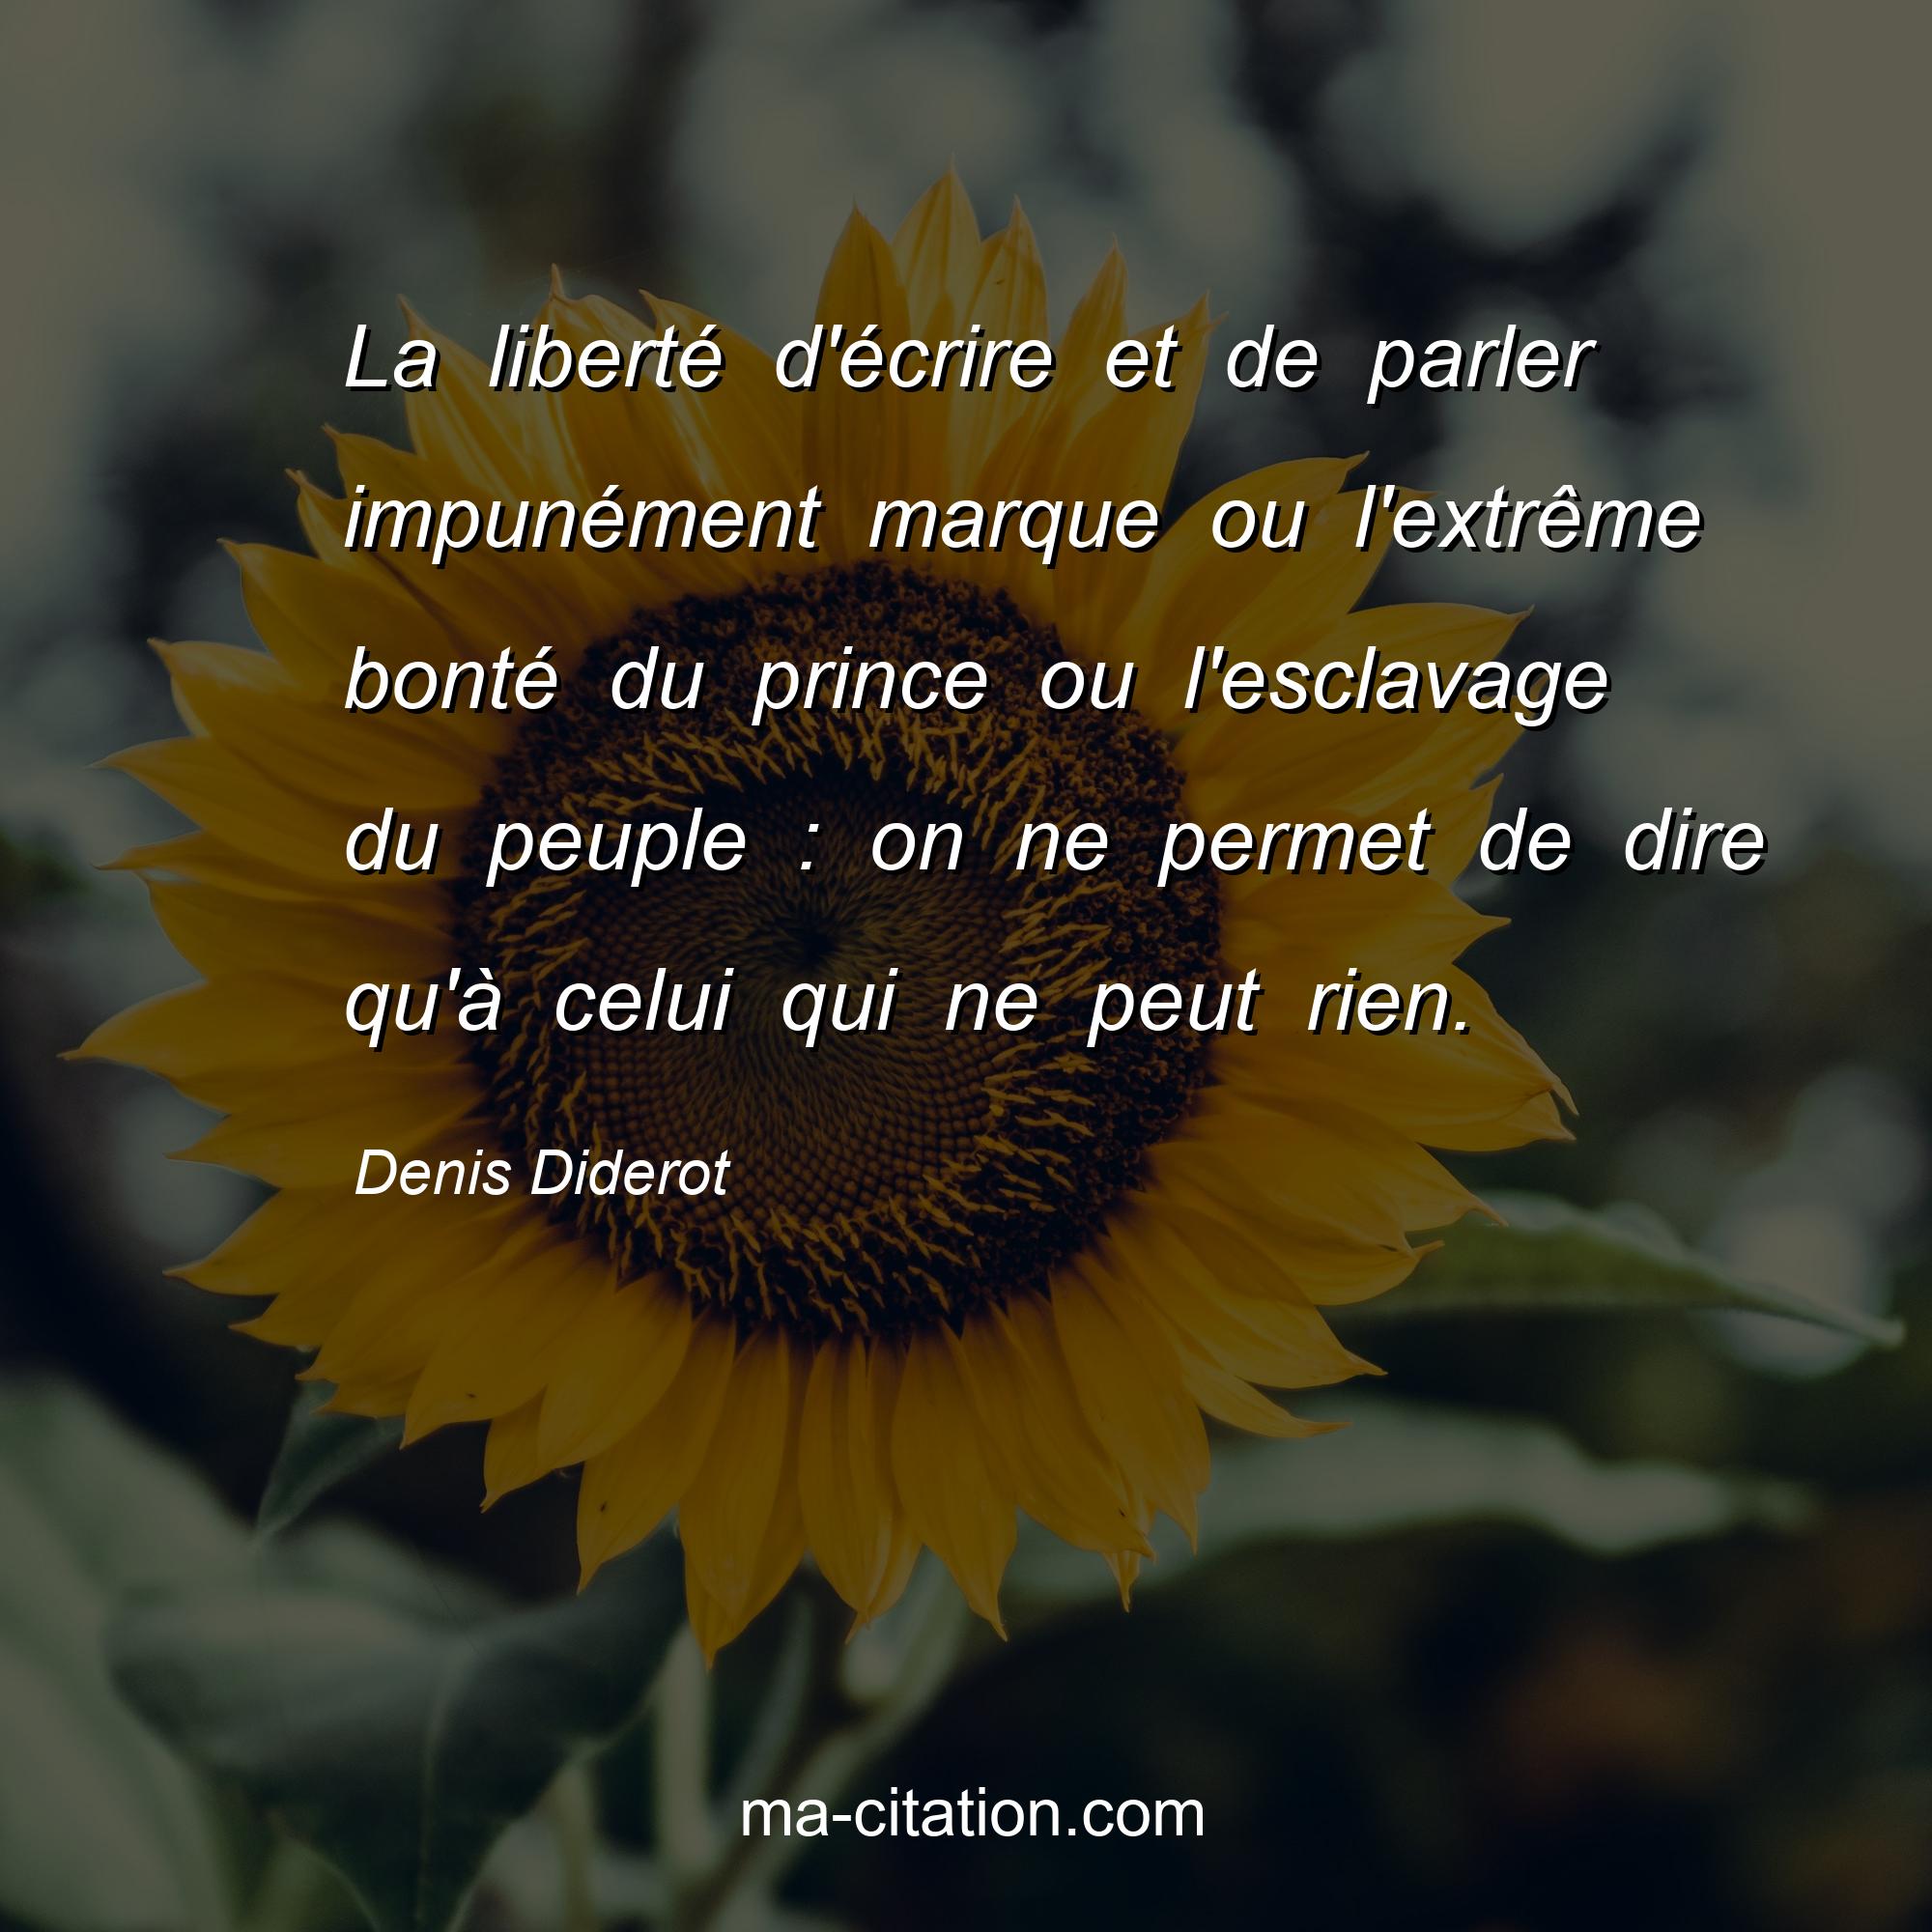 Denis Diderot : La liberté d'écrire et de parler impunément marque ou l'extrême bonté du prince ou l'esclavage du peuple : on ne permet de dire qu'à celui qui ne peut rien.